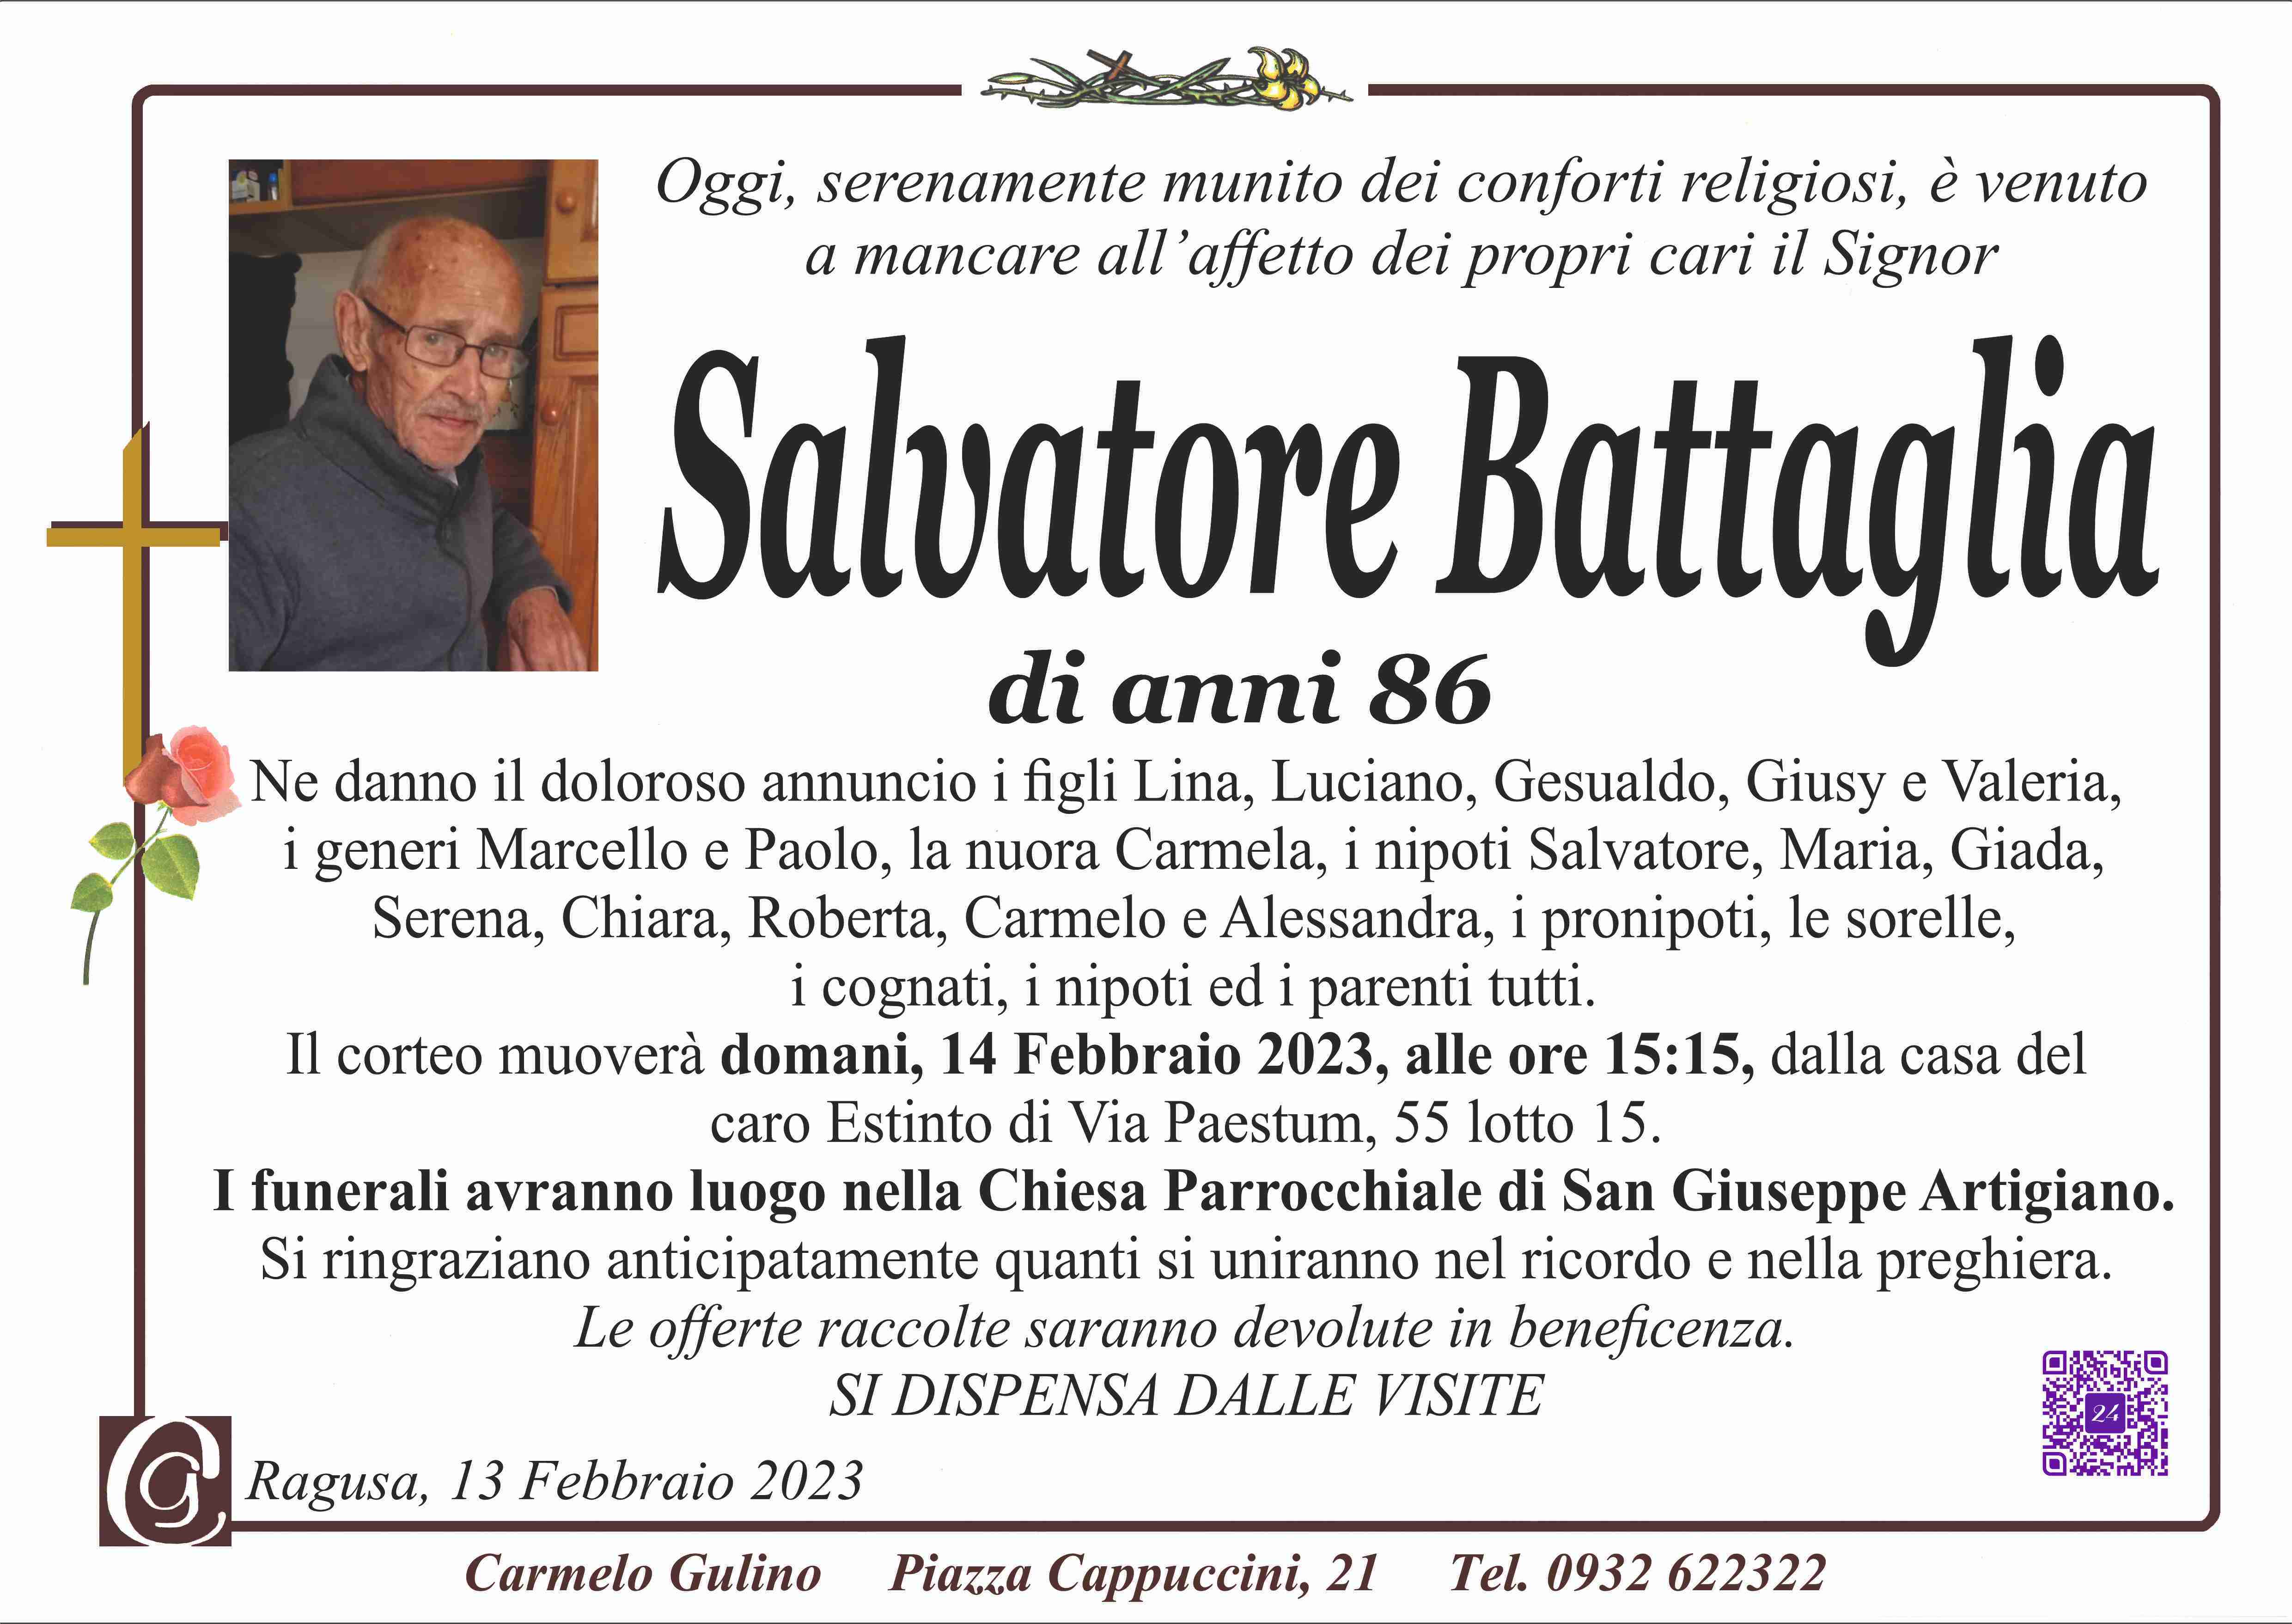 Salvatore Battaglia